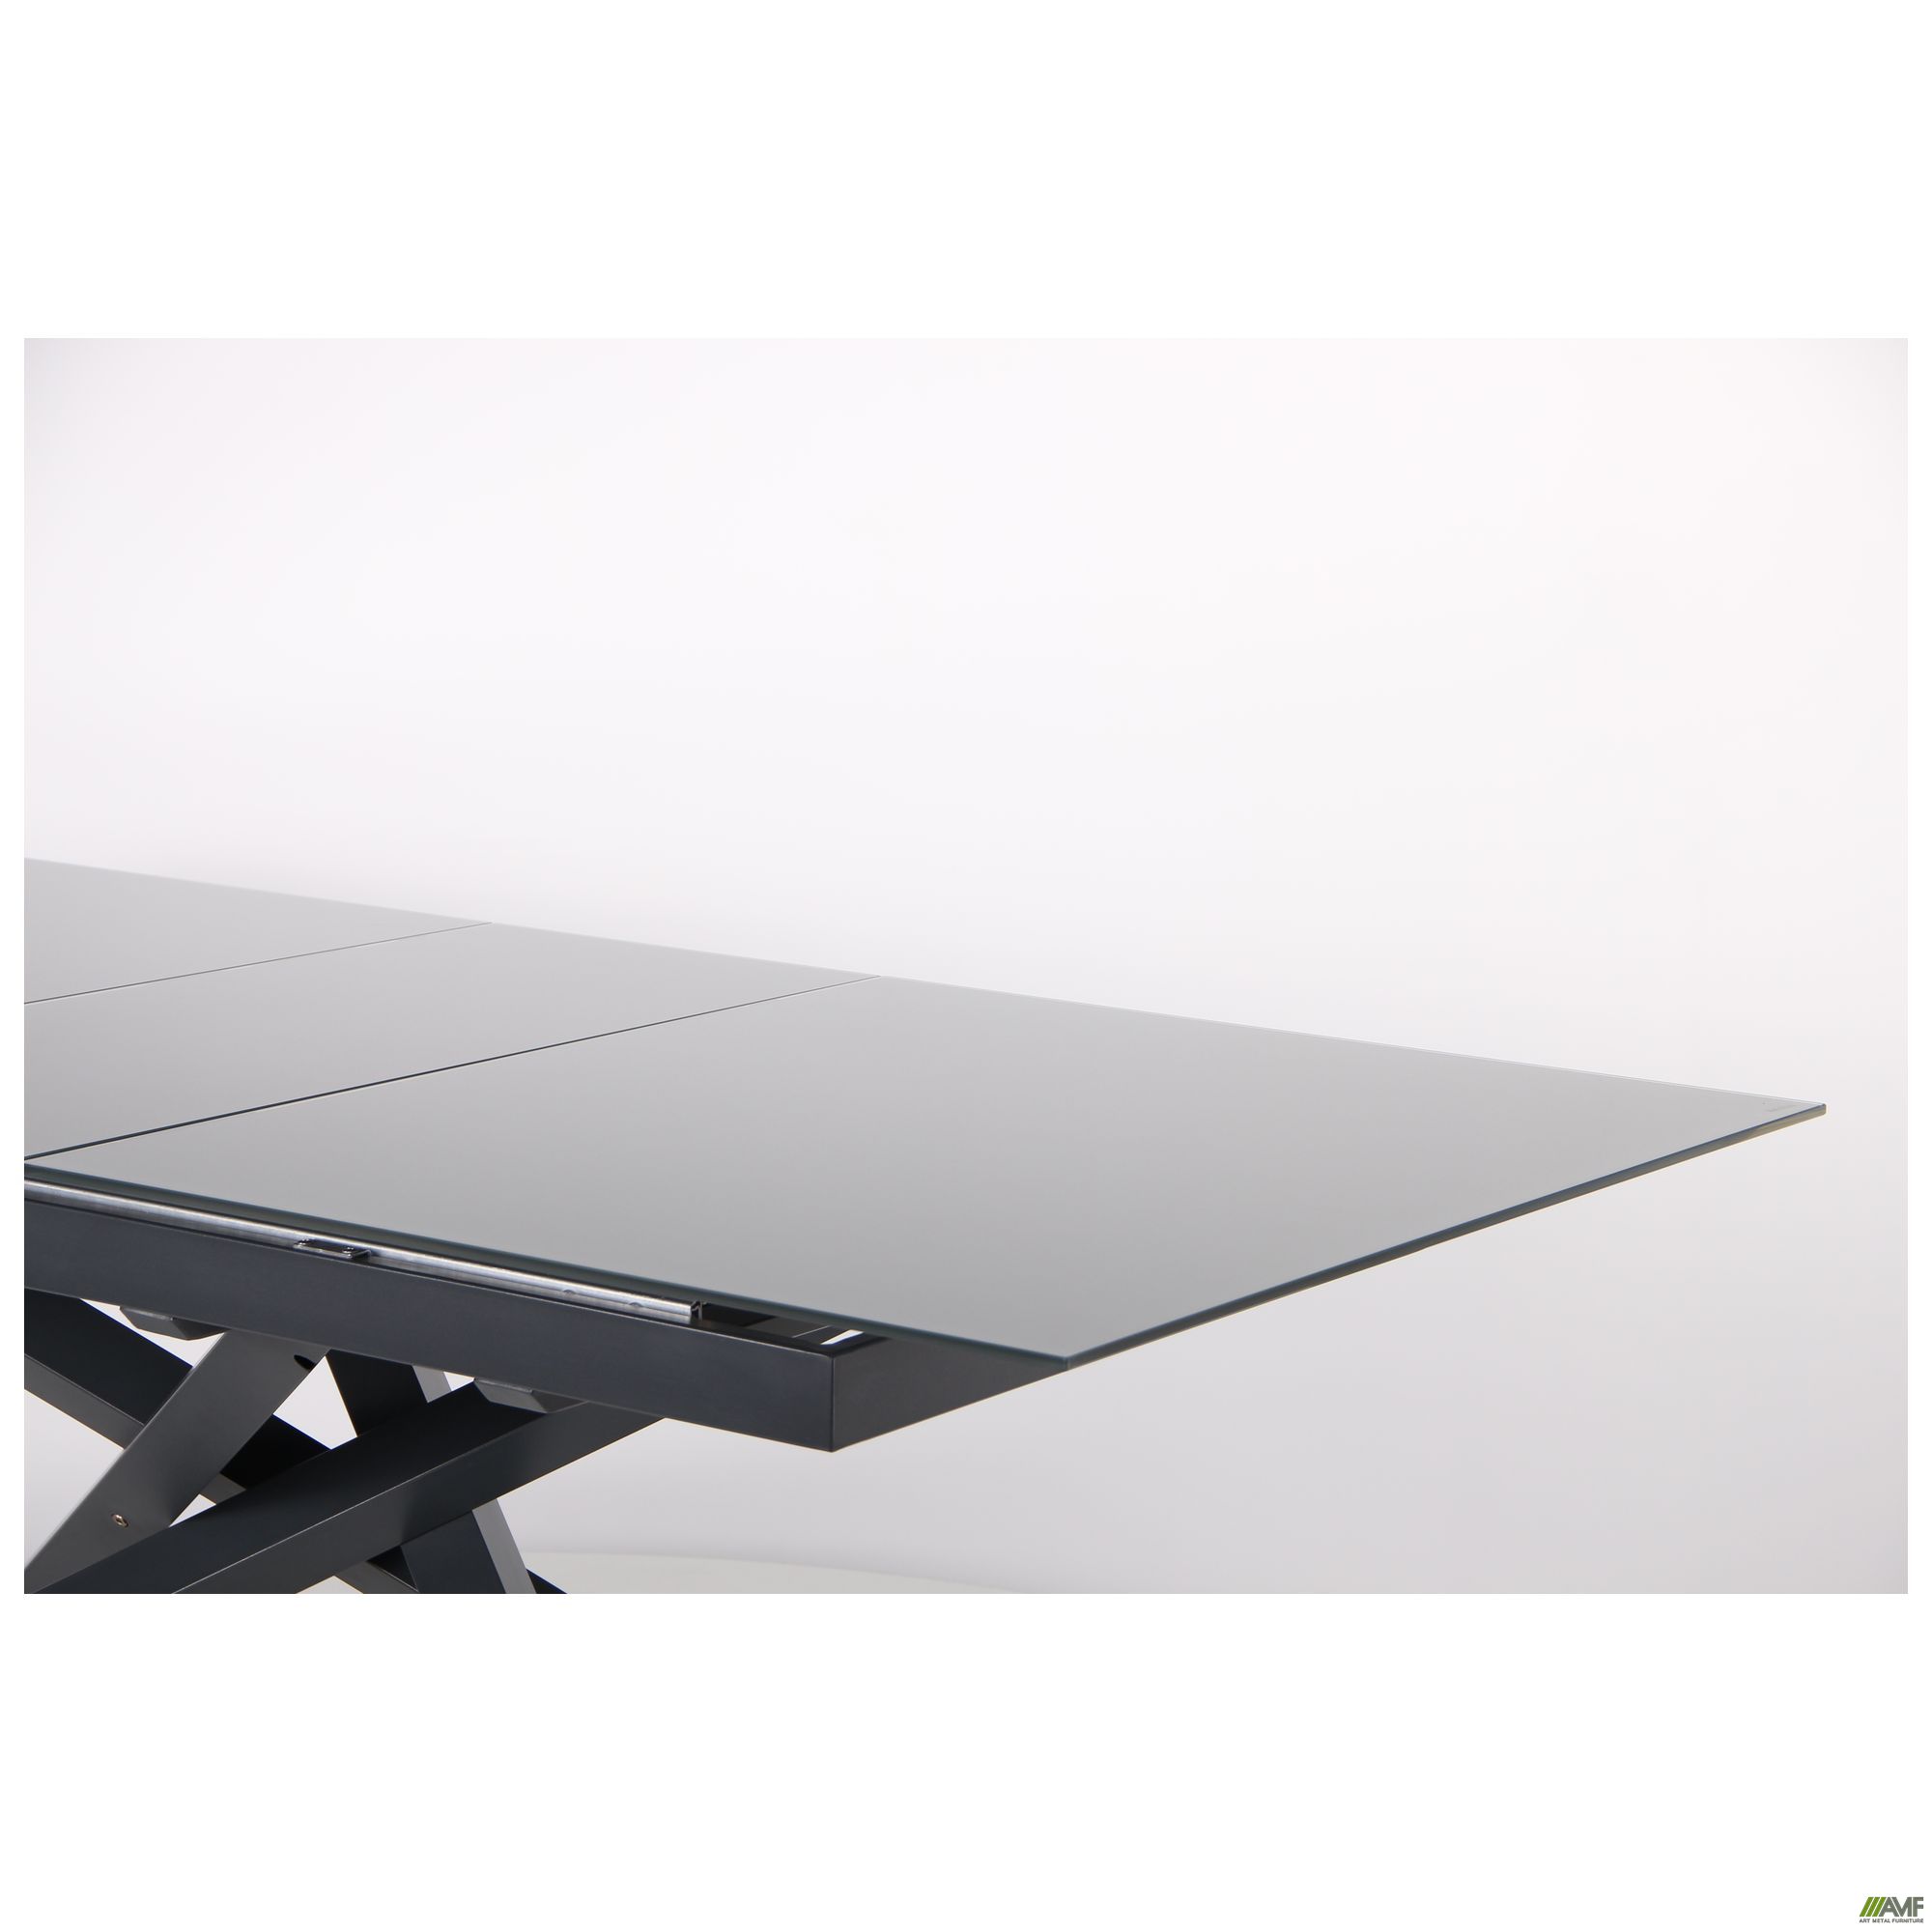 Фото 8 - Стол обеденный раскладной Gerald anthracite/glass Slate gray 